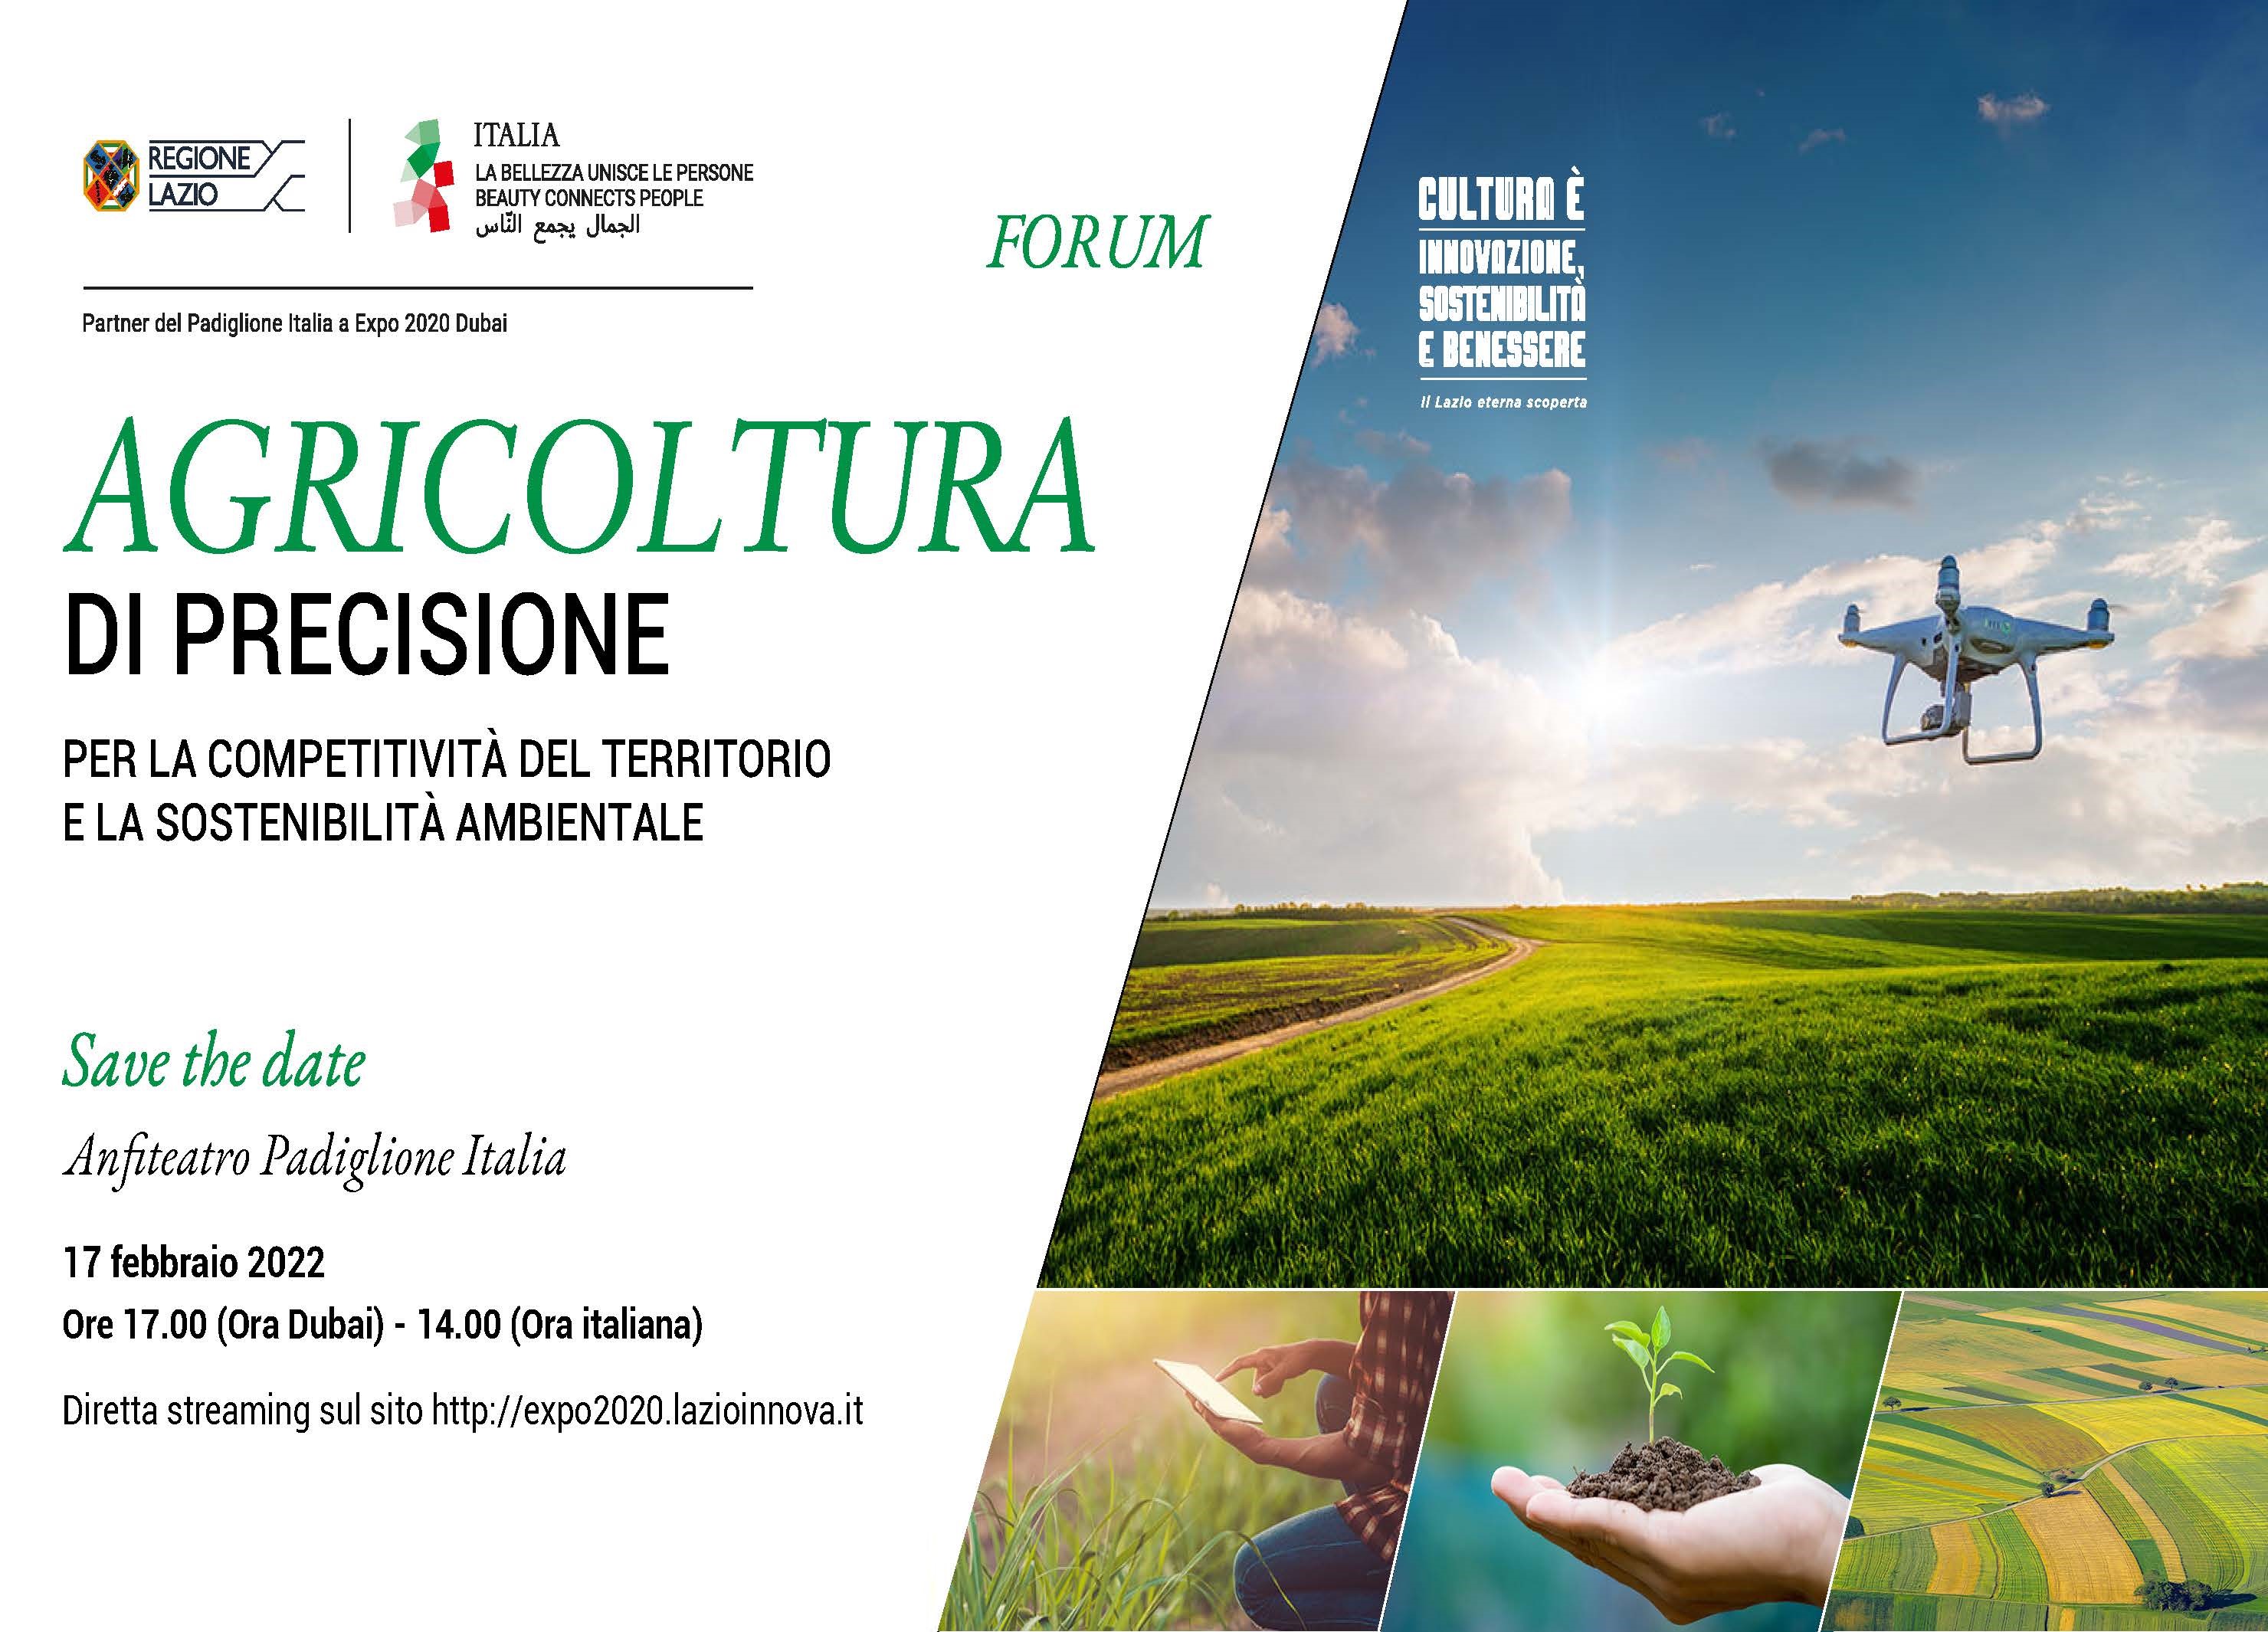 Forum: Agricoltura di precisione, per la competitività del territorio e la sostenibilità ambientale